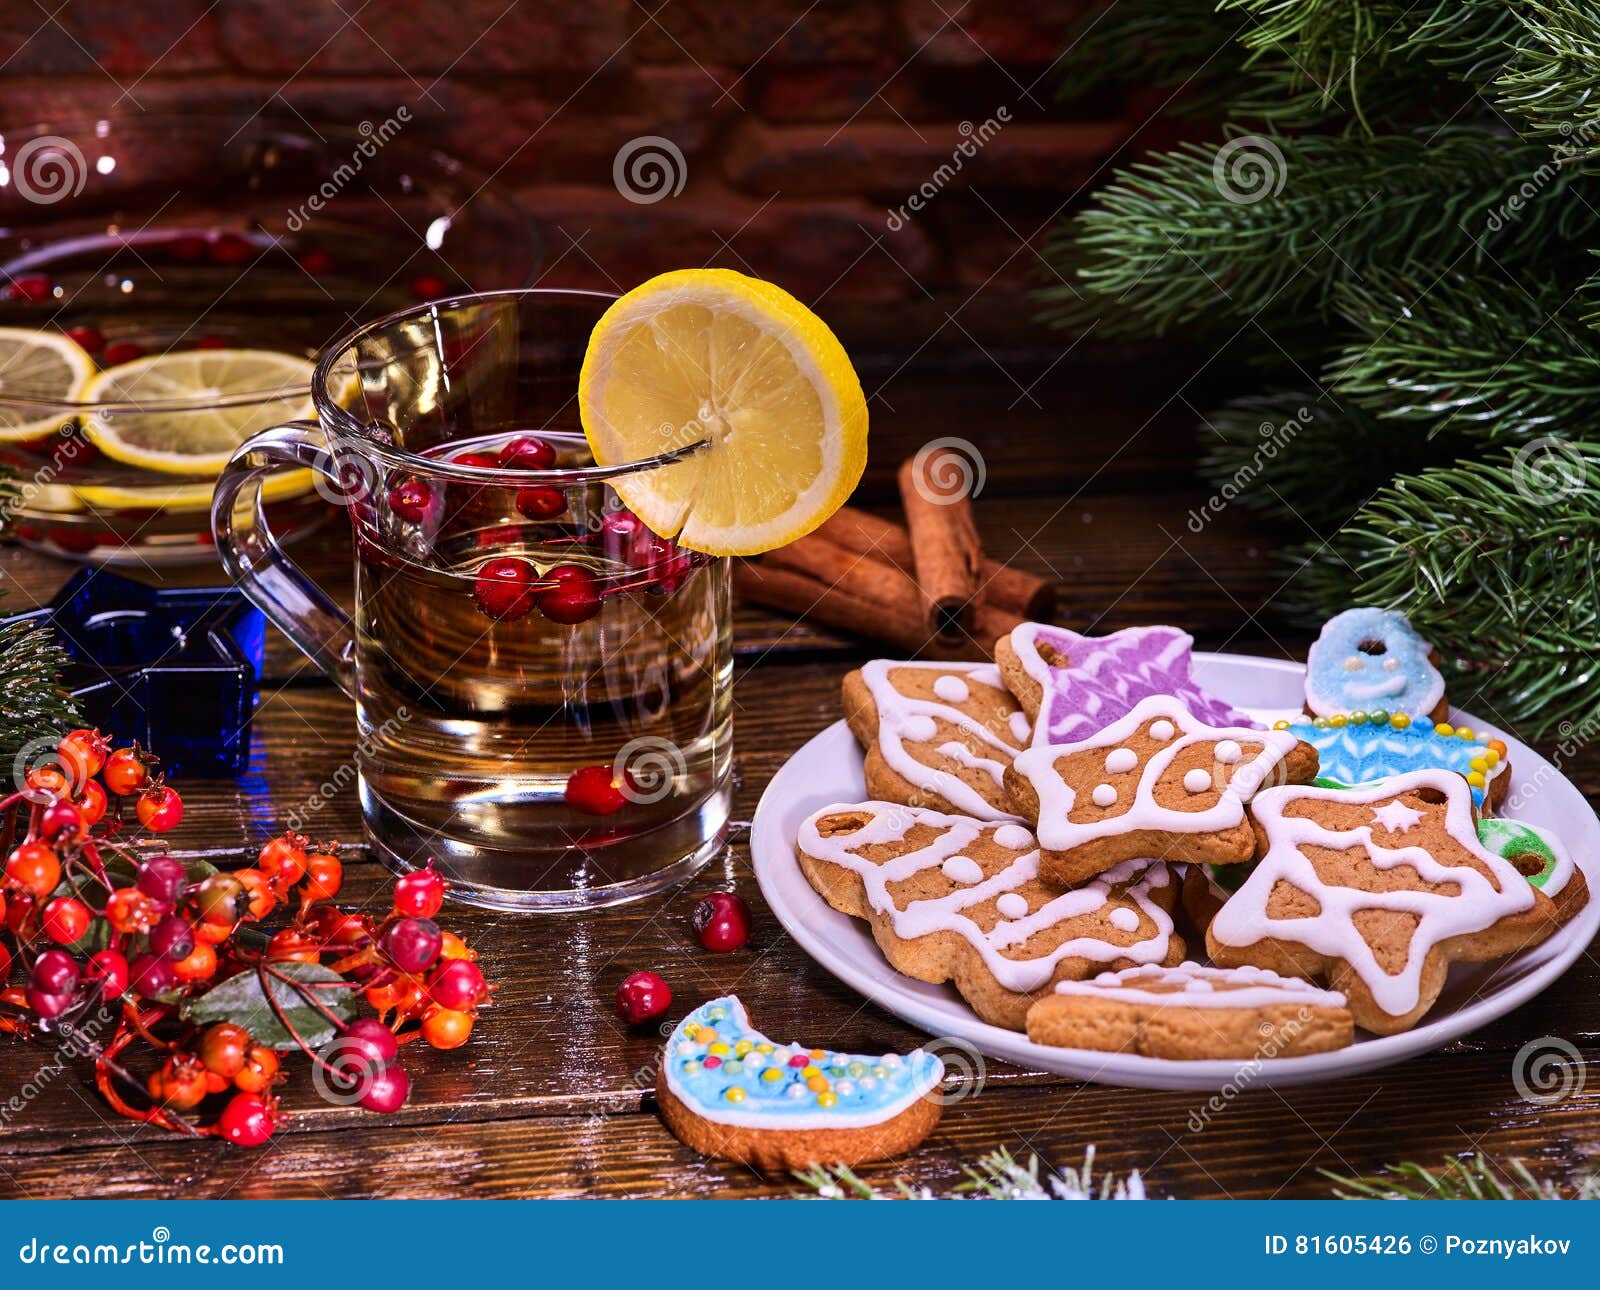 Christmas Glass Latte Mug With Lemon And Cookies On Plate ...